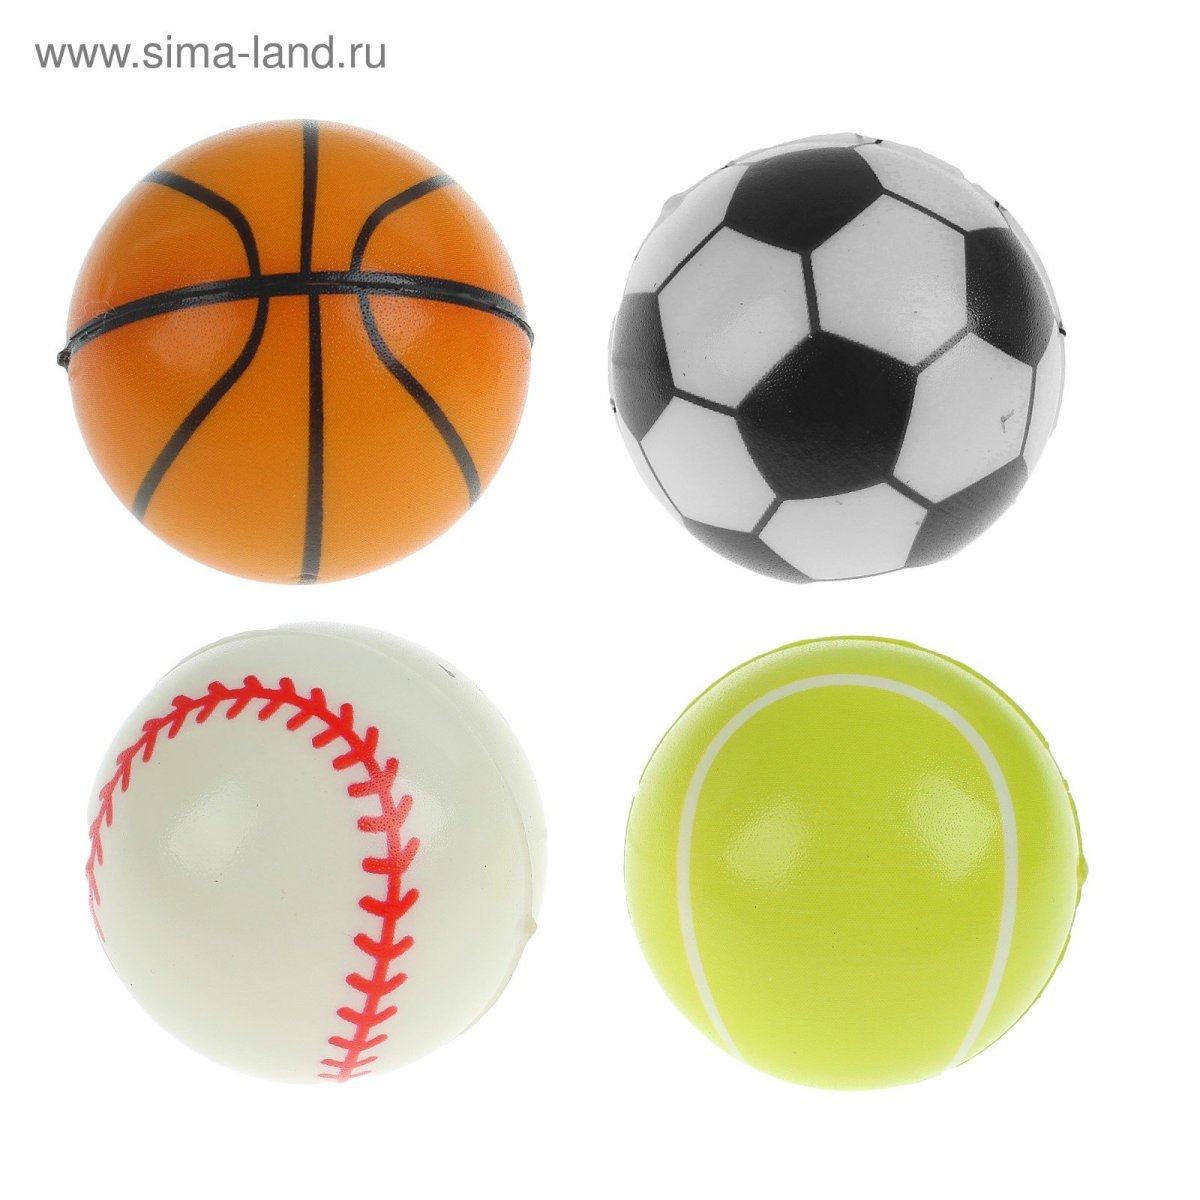 Мяч футбольный, 21.5 см, в асс, спорт y6-1871 327807